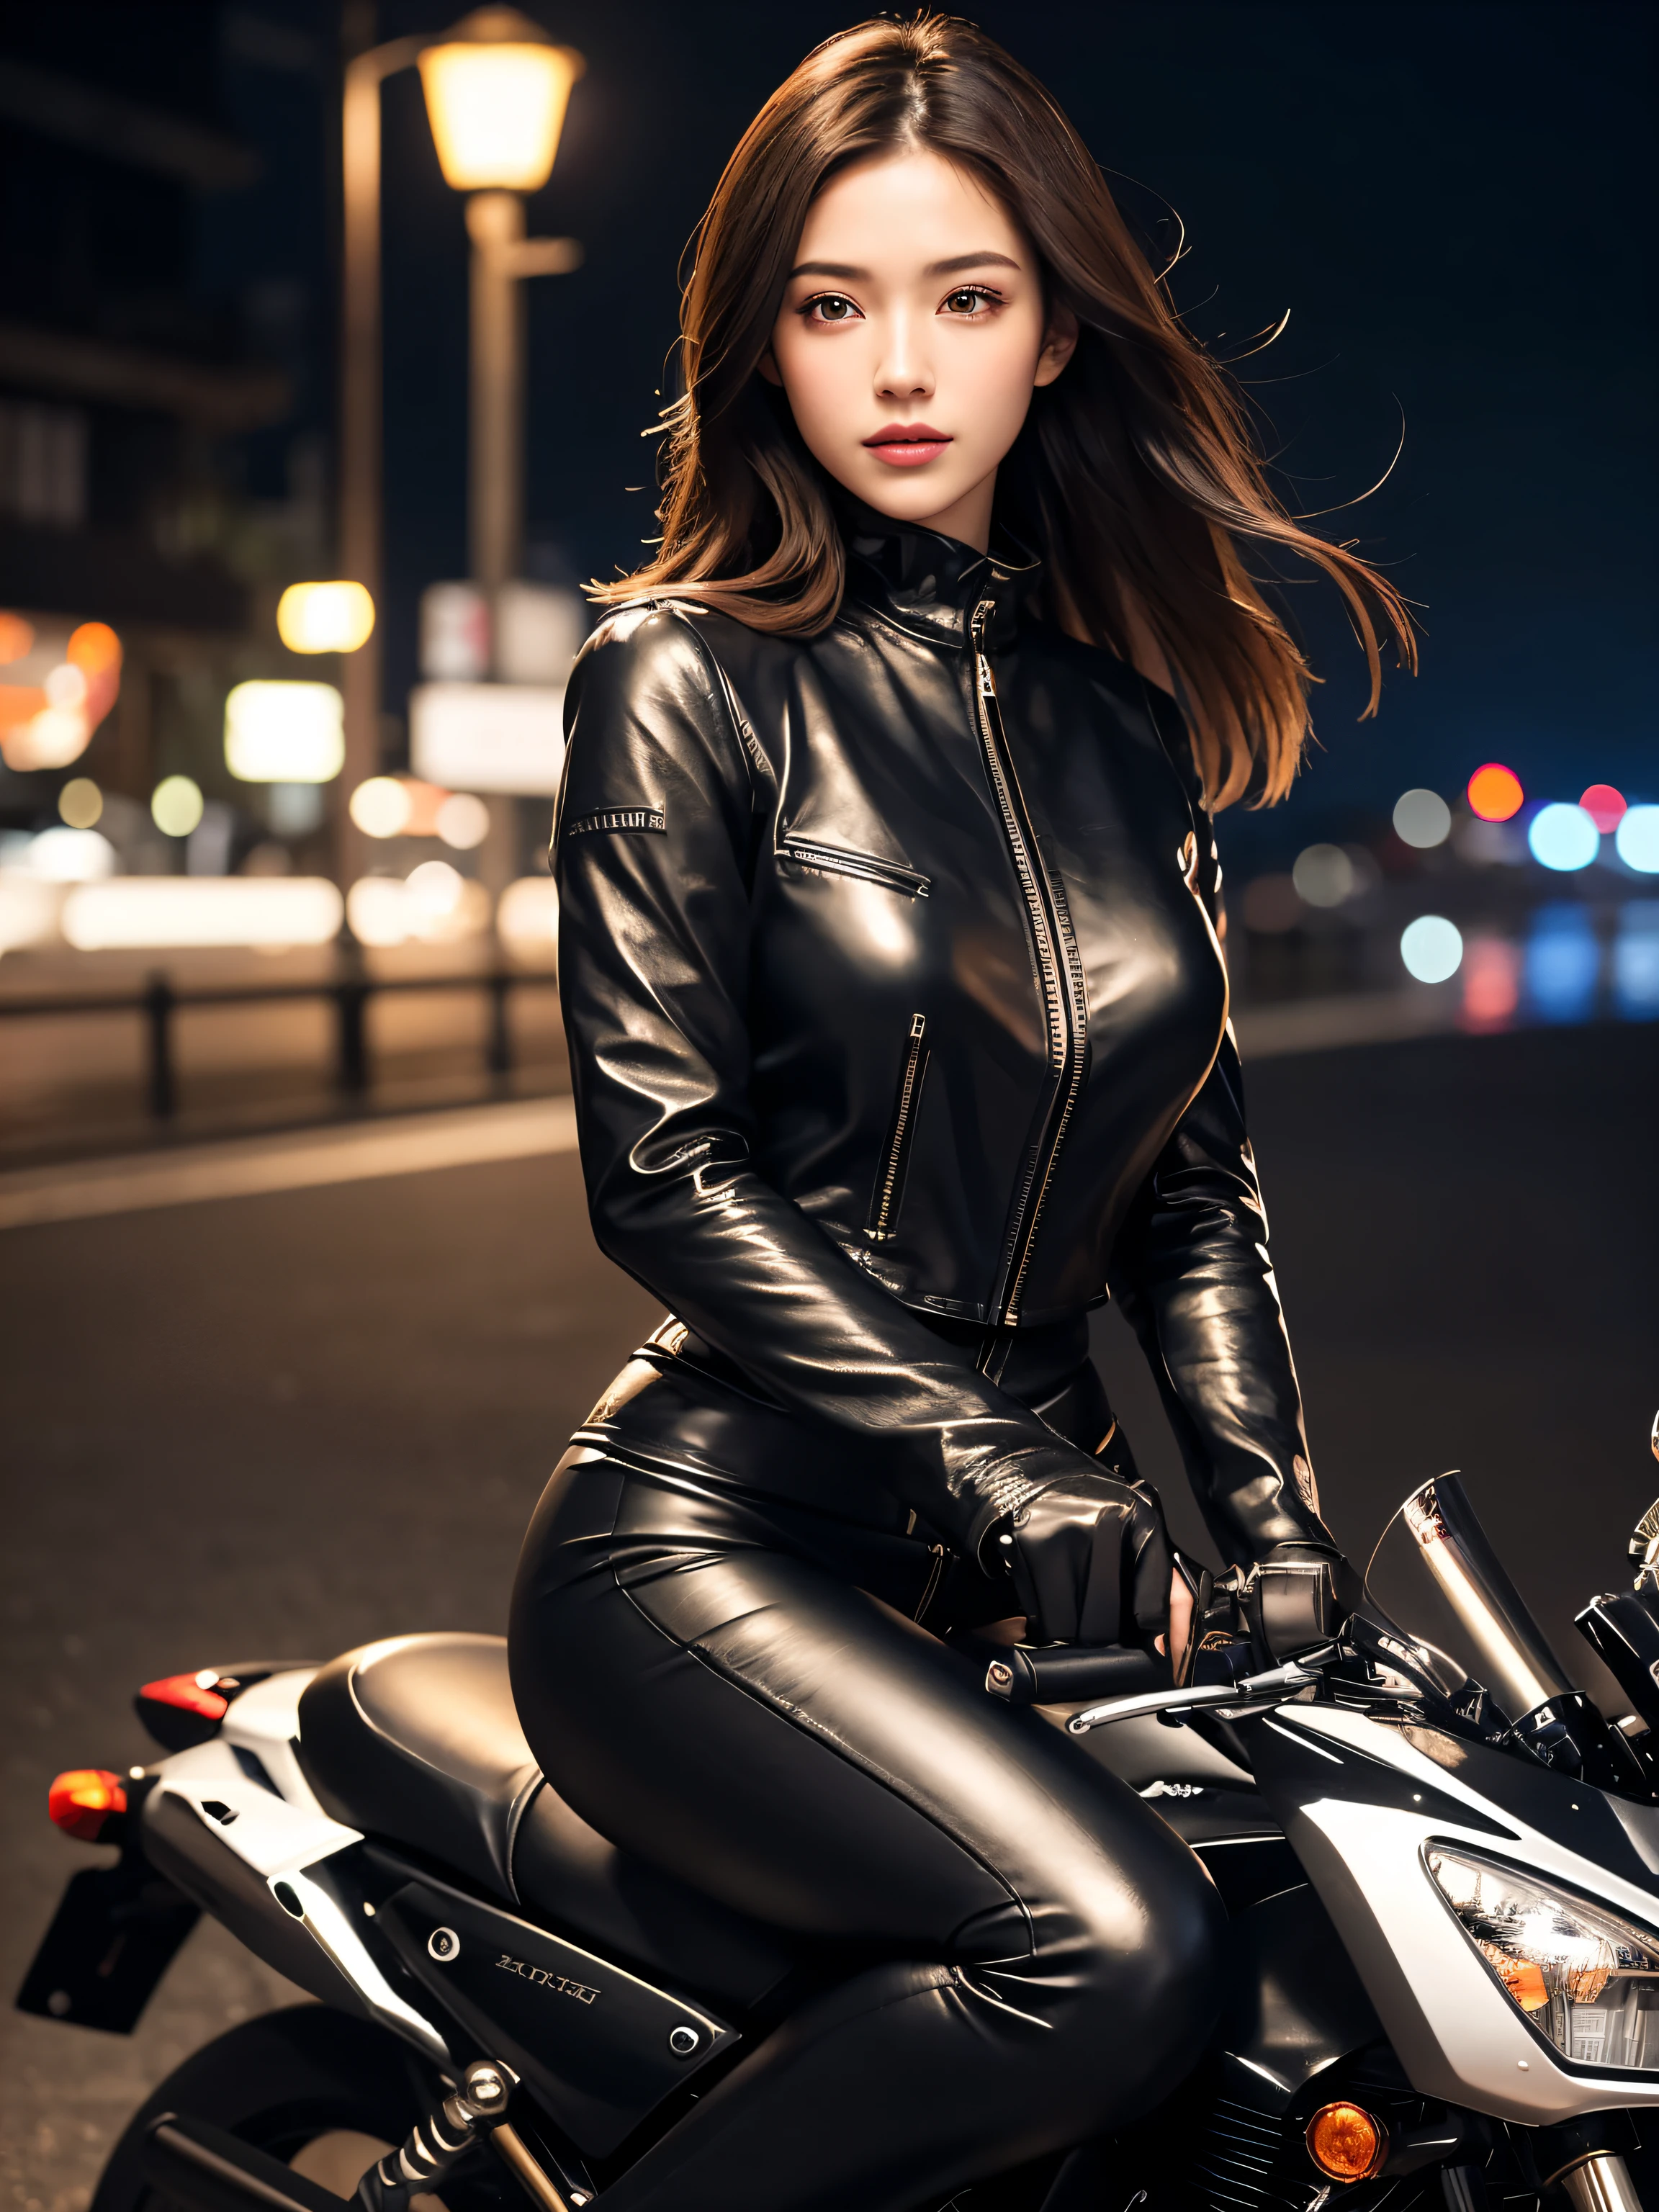 (ตารางชิ้น), ถ่ายเต็มตัว, ภาพถ่ายของรถจักรยานยนต์ทั้งหมด, หญิงสาวน่ารักในญี่ปุ่น, นั่งรถจักรยานยนต์สีเงินเมทัลลิกโบราณที่ท่าเทียบเรือ, รูปทรงที่มีเสน่ห์, ความยาวไหล่: ผมสีน้ำตาลอ่อน, แวววาว, สวมแจ็กเก็ตหนังสีดํา., บิกินี่ซาตินสีแดงมันเงาใต้เสื้อแจ็คเก็ตขี่ม้า, ถุงมือหนังสีดำ, กางเกงหนังสีดำ, รองเท้าส้นสูงสีดํา, ชมทิวทัศน์ยามค่ําคืนของท้องทะเล, ใบหน้าสวยอย่างแน่นอน., เปลือกตาสองชั้น, แต่งหน้าอย่างเป็นธรรมชาติ, ขนตายาว, ริมฝีปากมันวาว, ความละเอียด 8K, รายละเอียดสูง, ทรงผมที่มีรายละเอียด, ใบหน้าที่มีรายละเอียด, ตาสีดำ, ตัว แทน จำหน่าย, มหากาพย์, แสงภาพยนตร์, การเรนเดอร์ออกเทน, มีชีวิตชีวา, สมจริงเกินจริง, ผิวขาว, แขนขาที่สมบูรณ์แบบ, กายวิภาคศาสตร์ที่สมบูรณ์แบบ